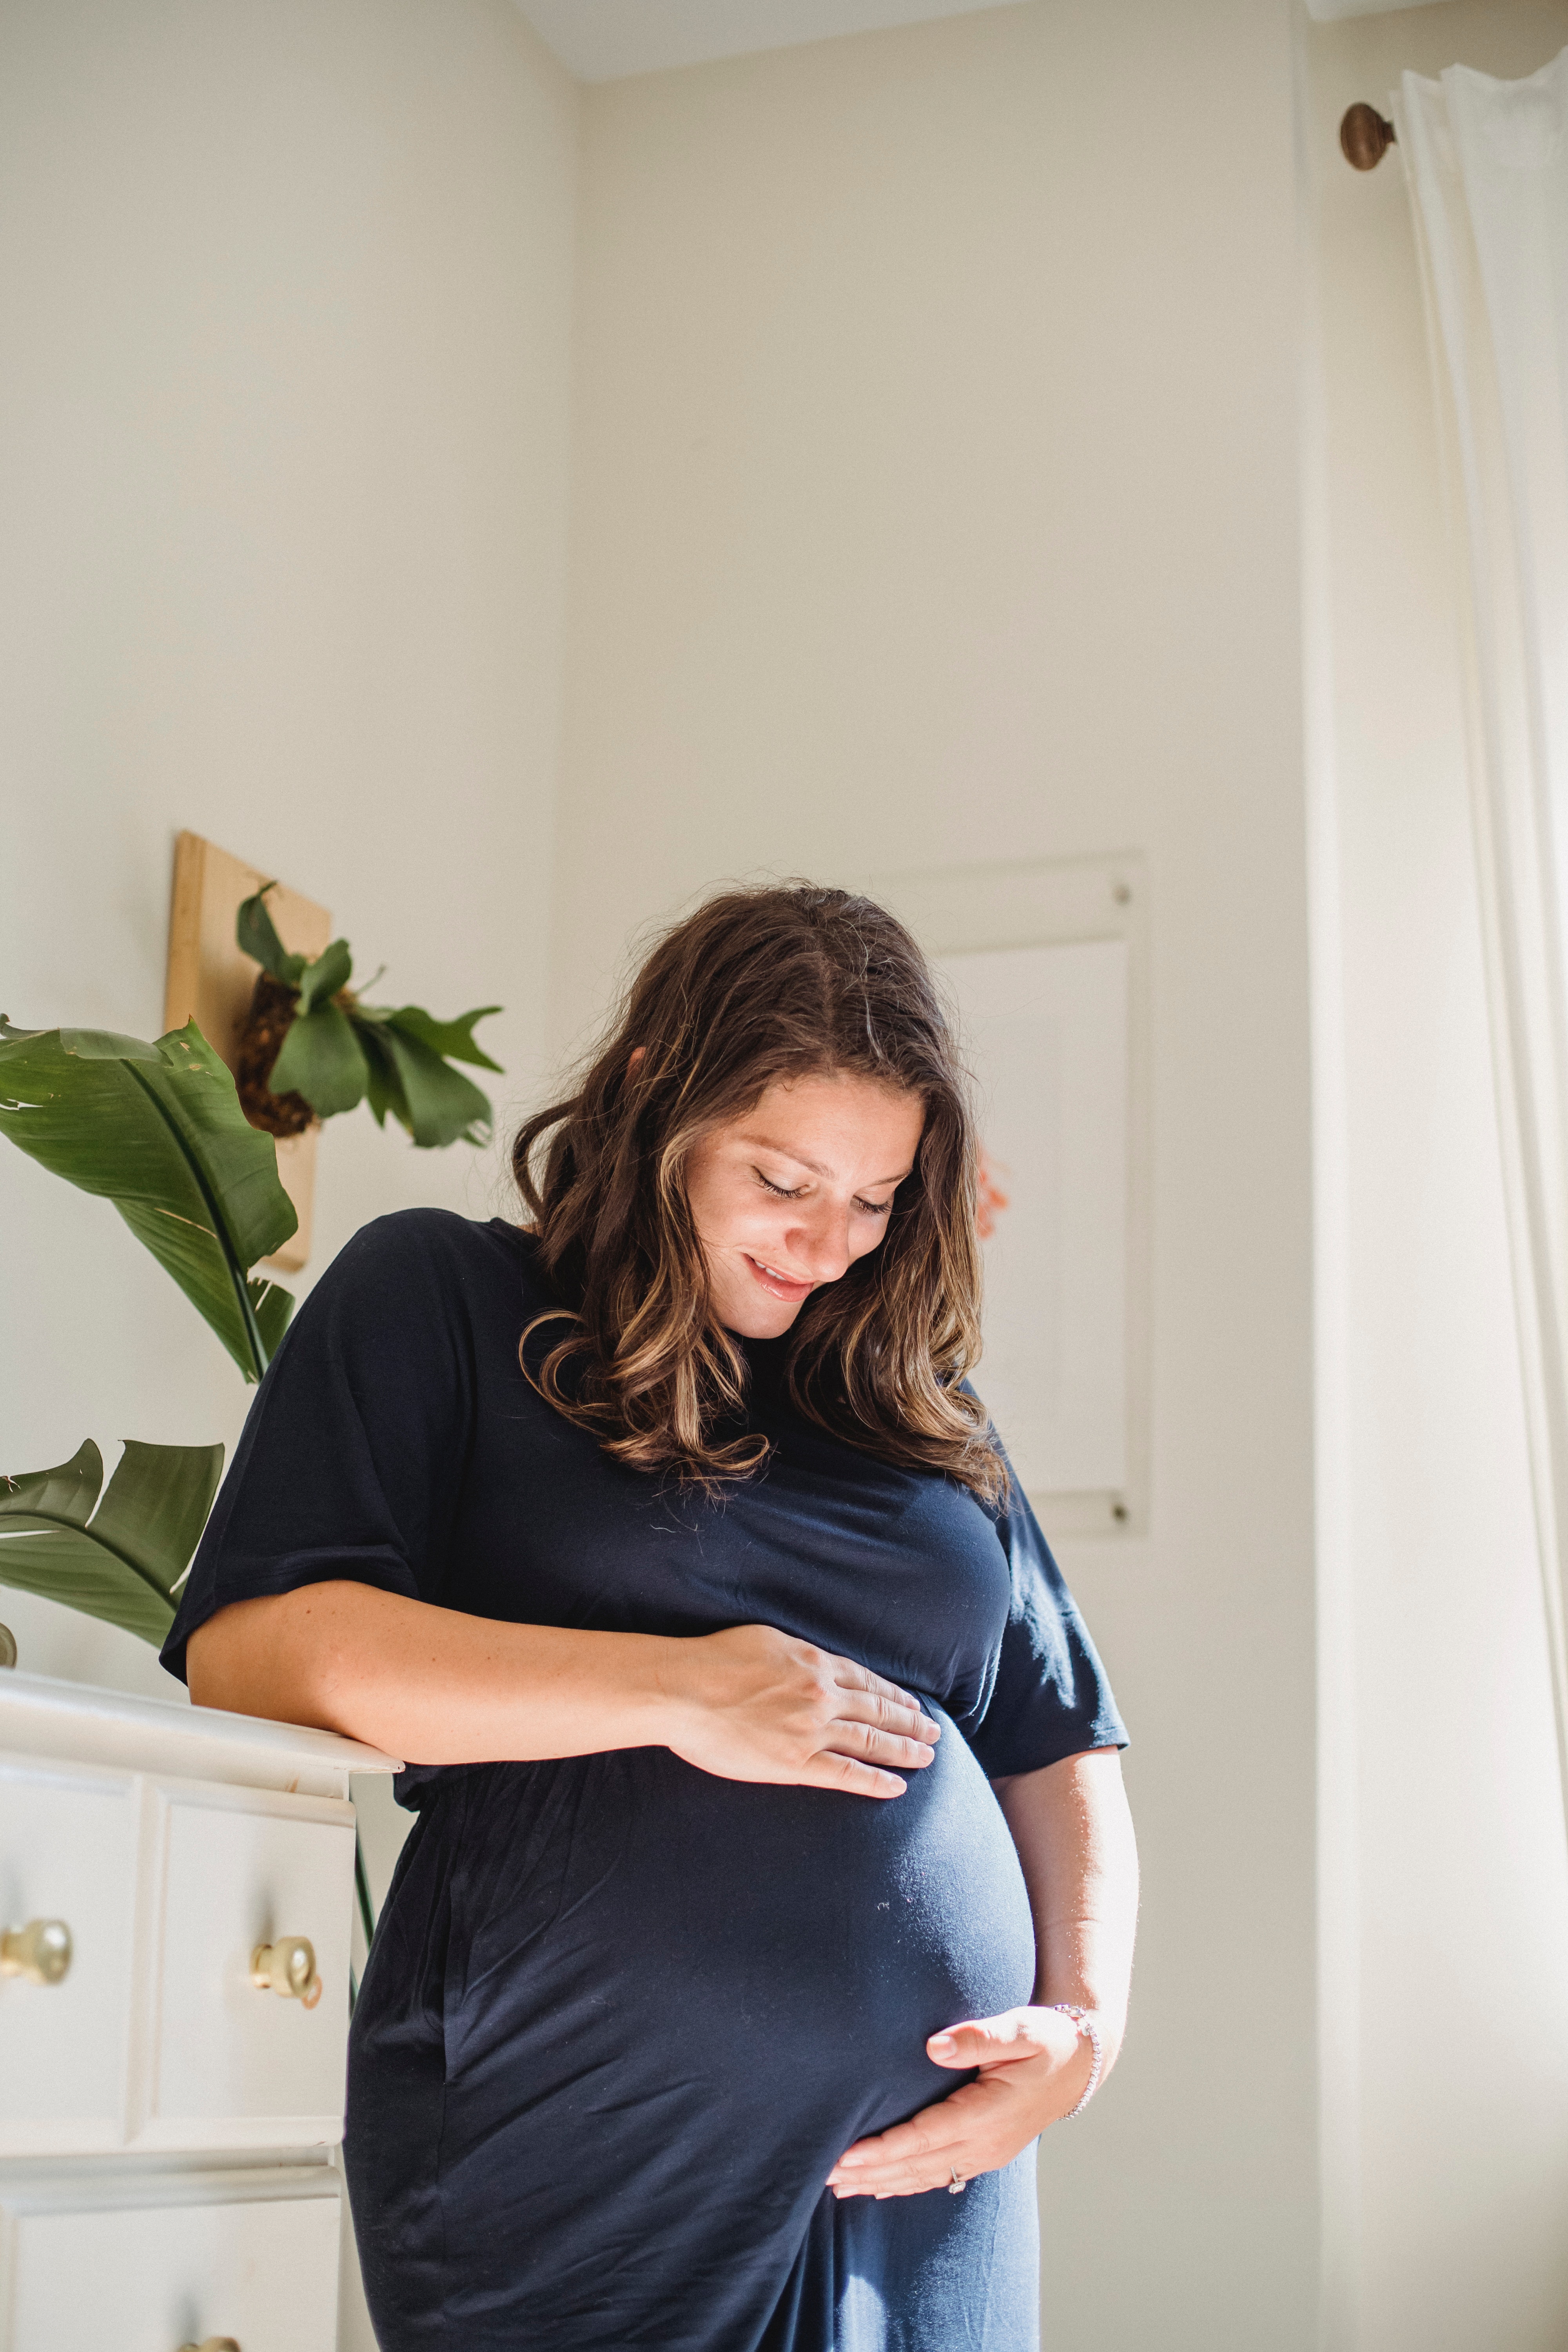 Une femme qui sourit à son ventre de femme enceinte | Source : Pexels